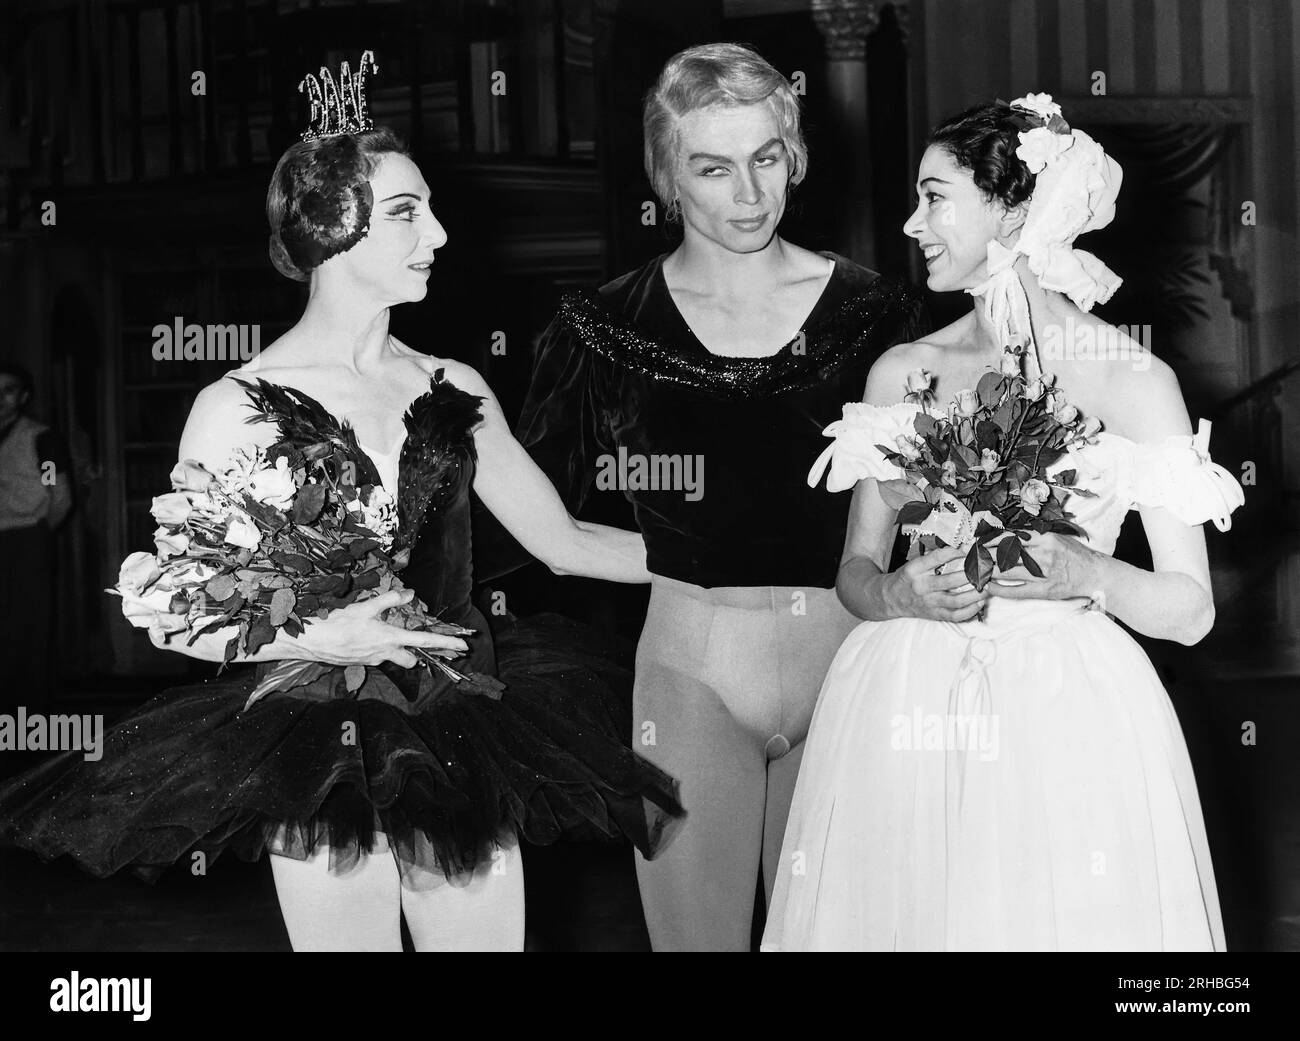 World:  1961 Ballet dancers Rudolf Nureyev and Margot Fonteyn (r) with another unidentified dancer. Stock Photo